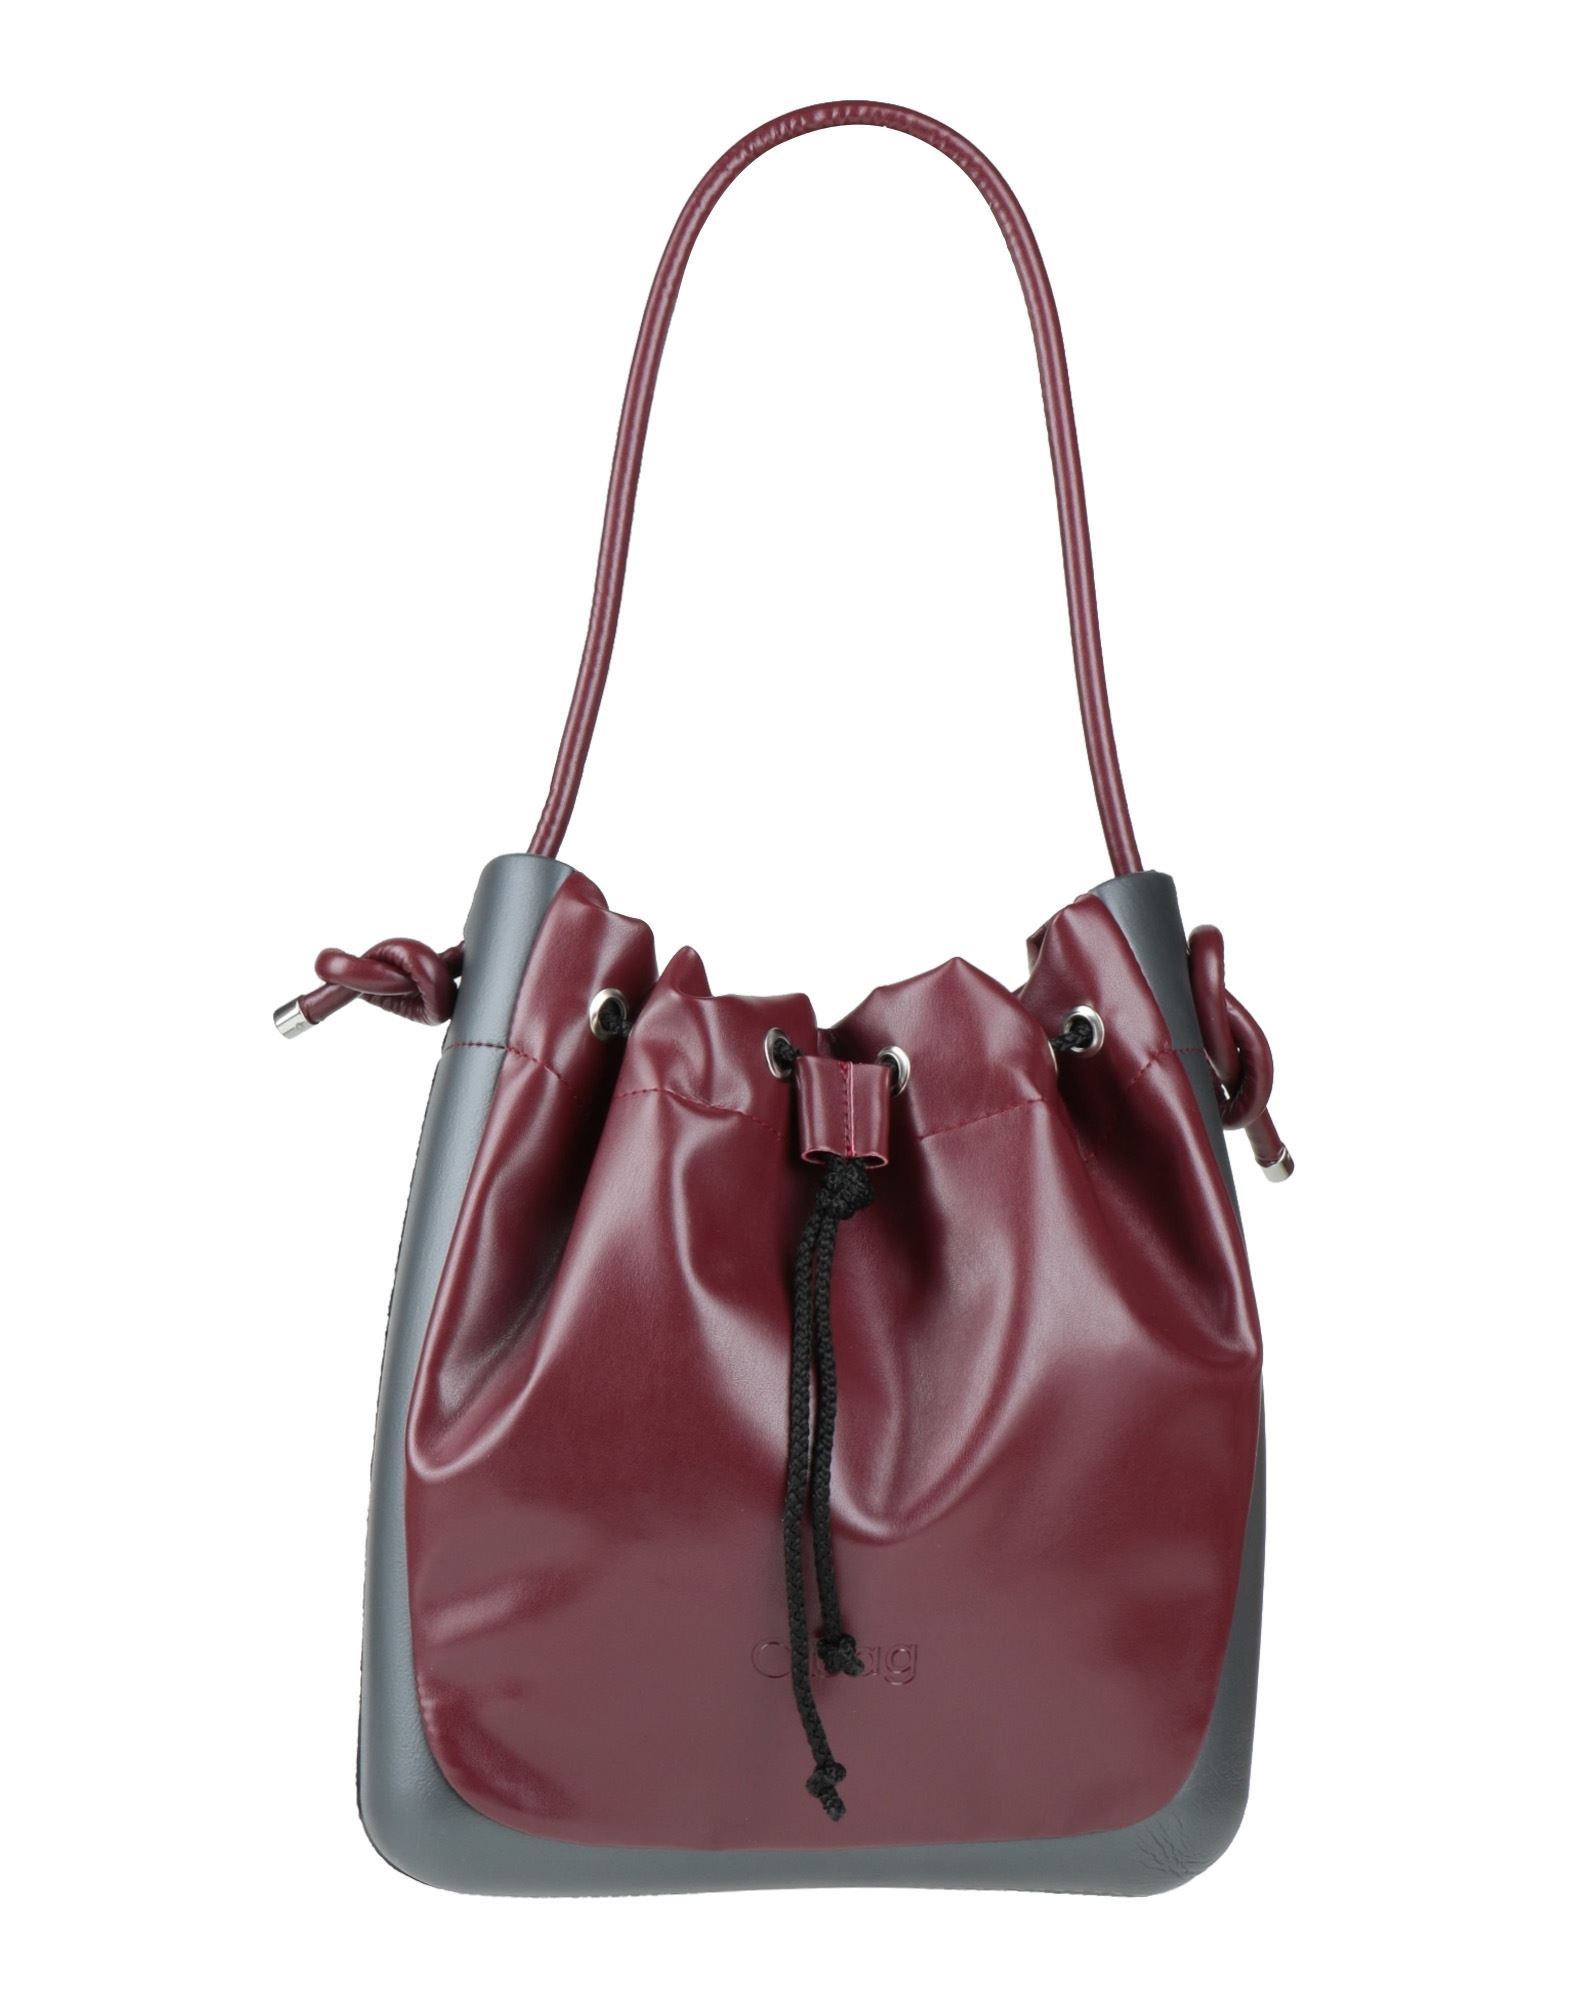 O Bag Handbags In Brick Red